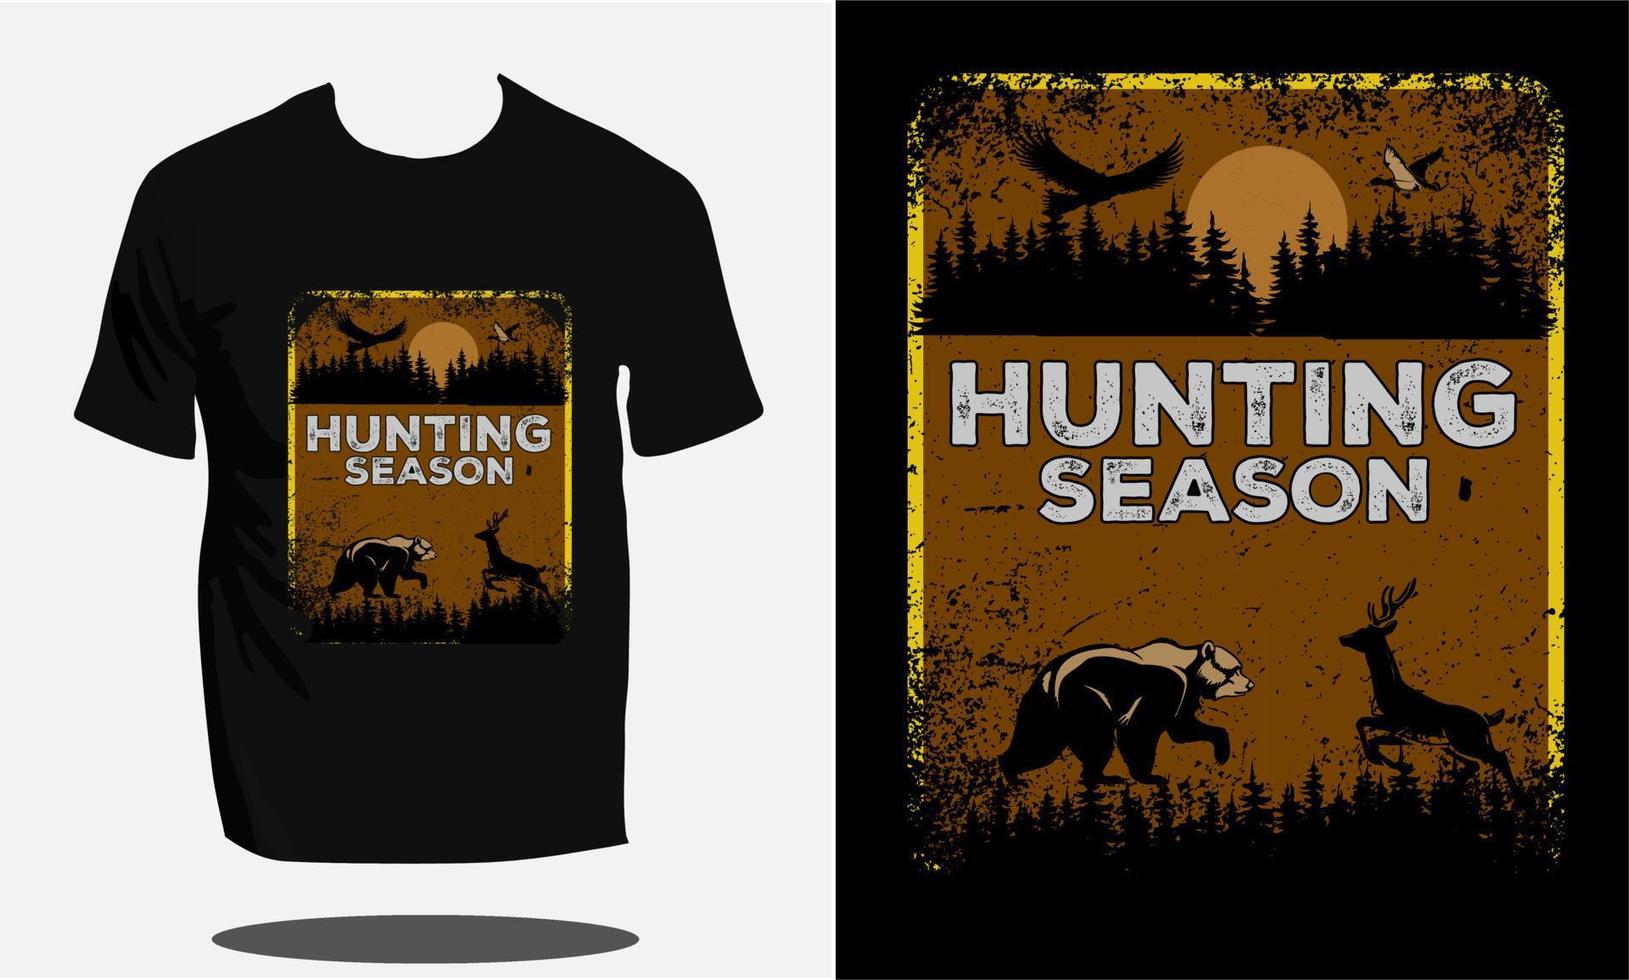 conception de t shirt de chasse ou modèle de conception de t shirt de chasse ou vecteur de chasse pour t shirt